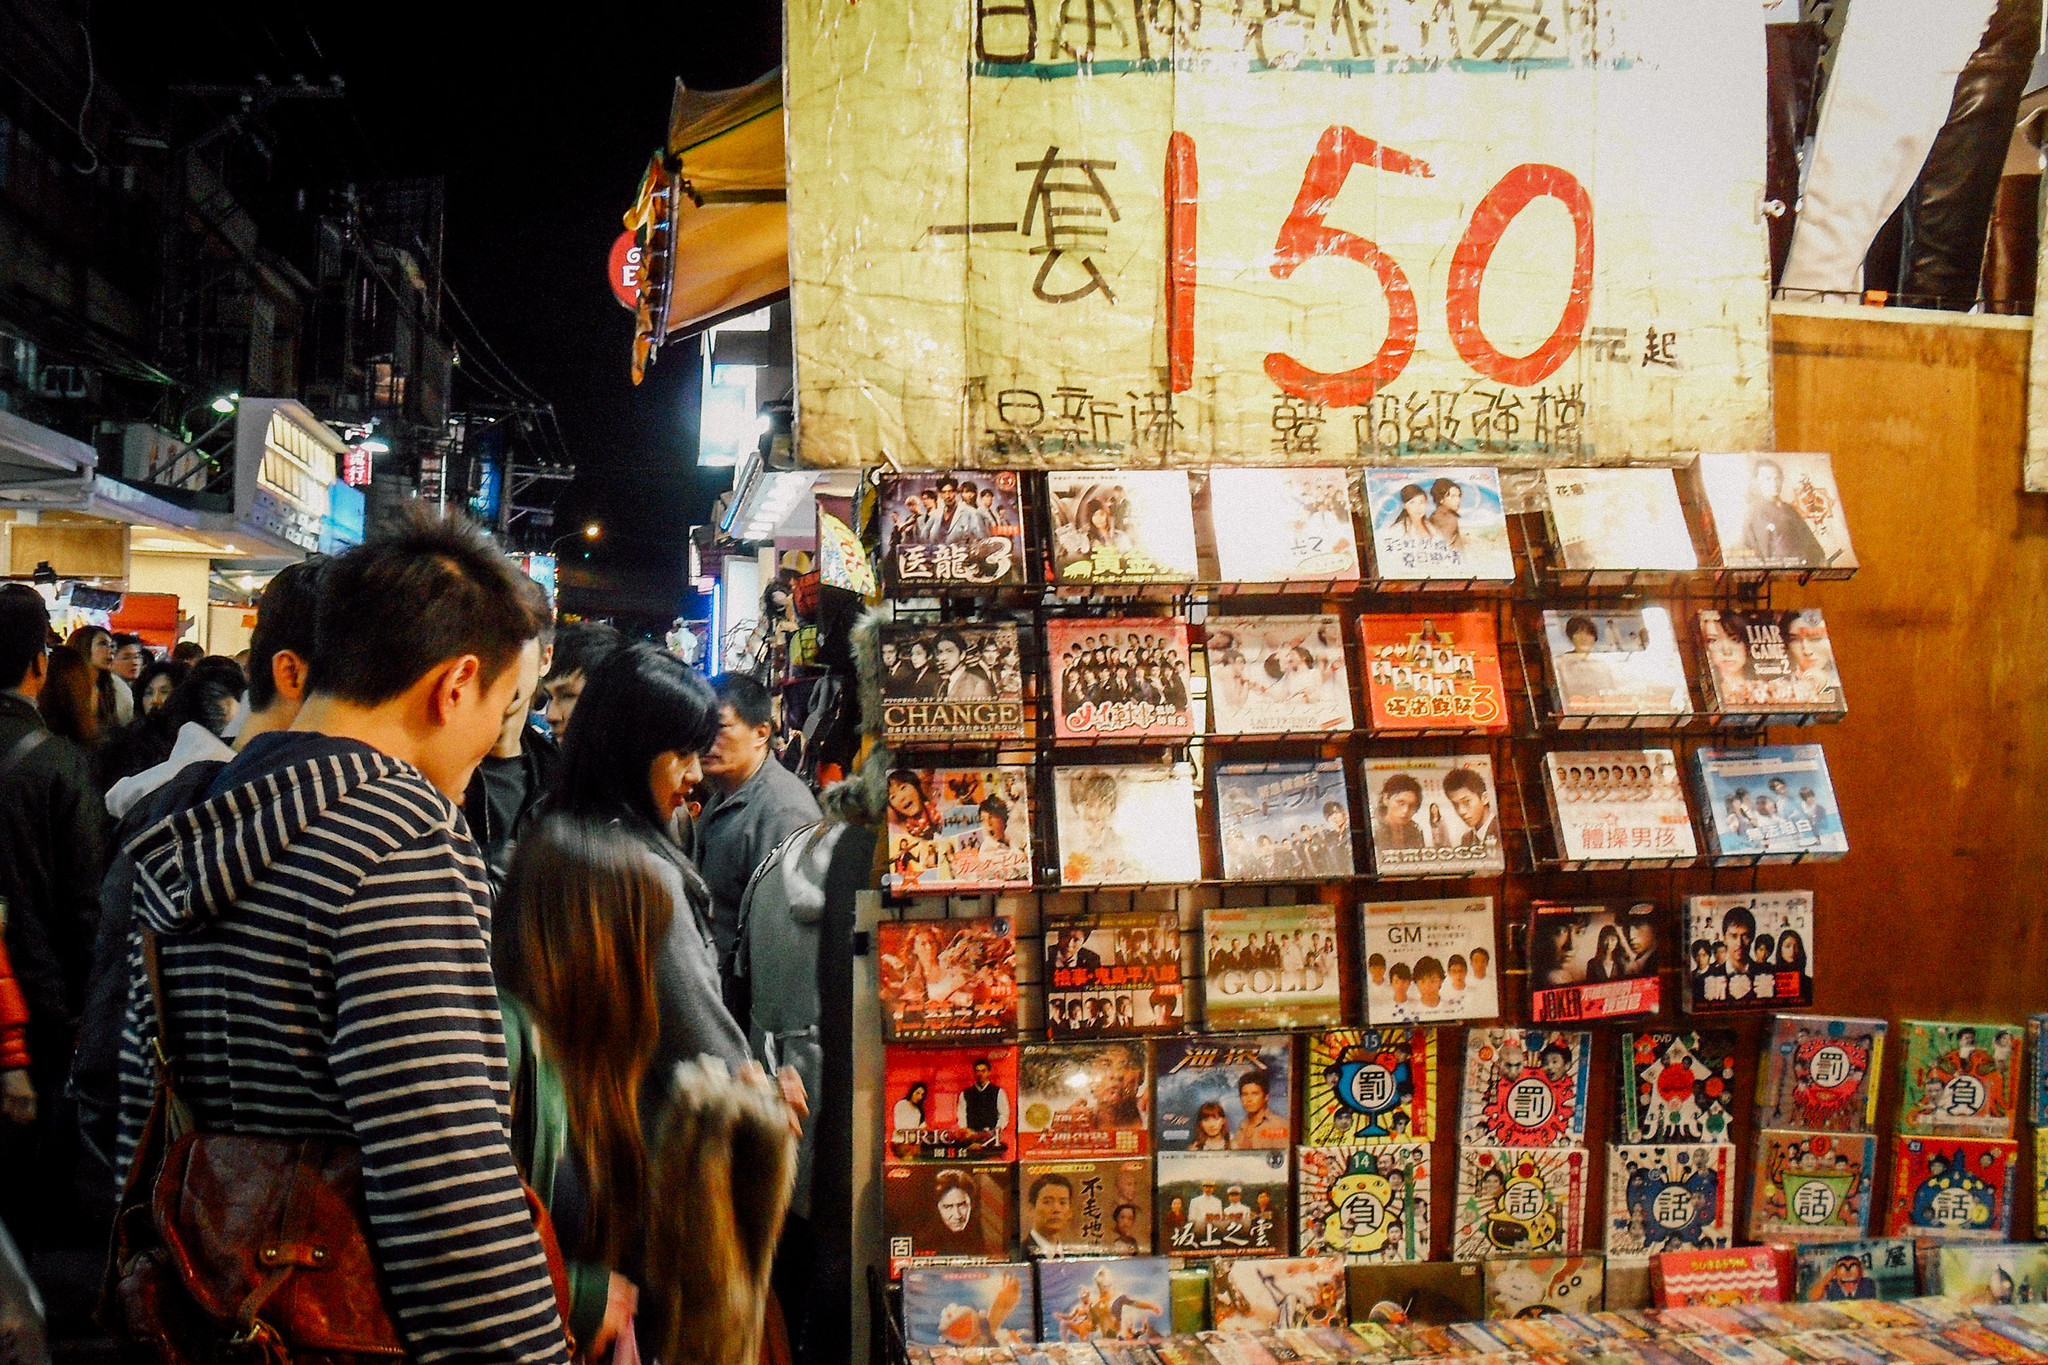 El mercado de Shilin se extiende por decenas de calles